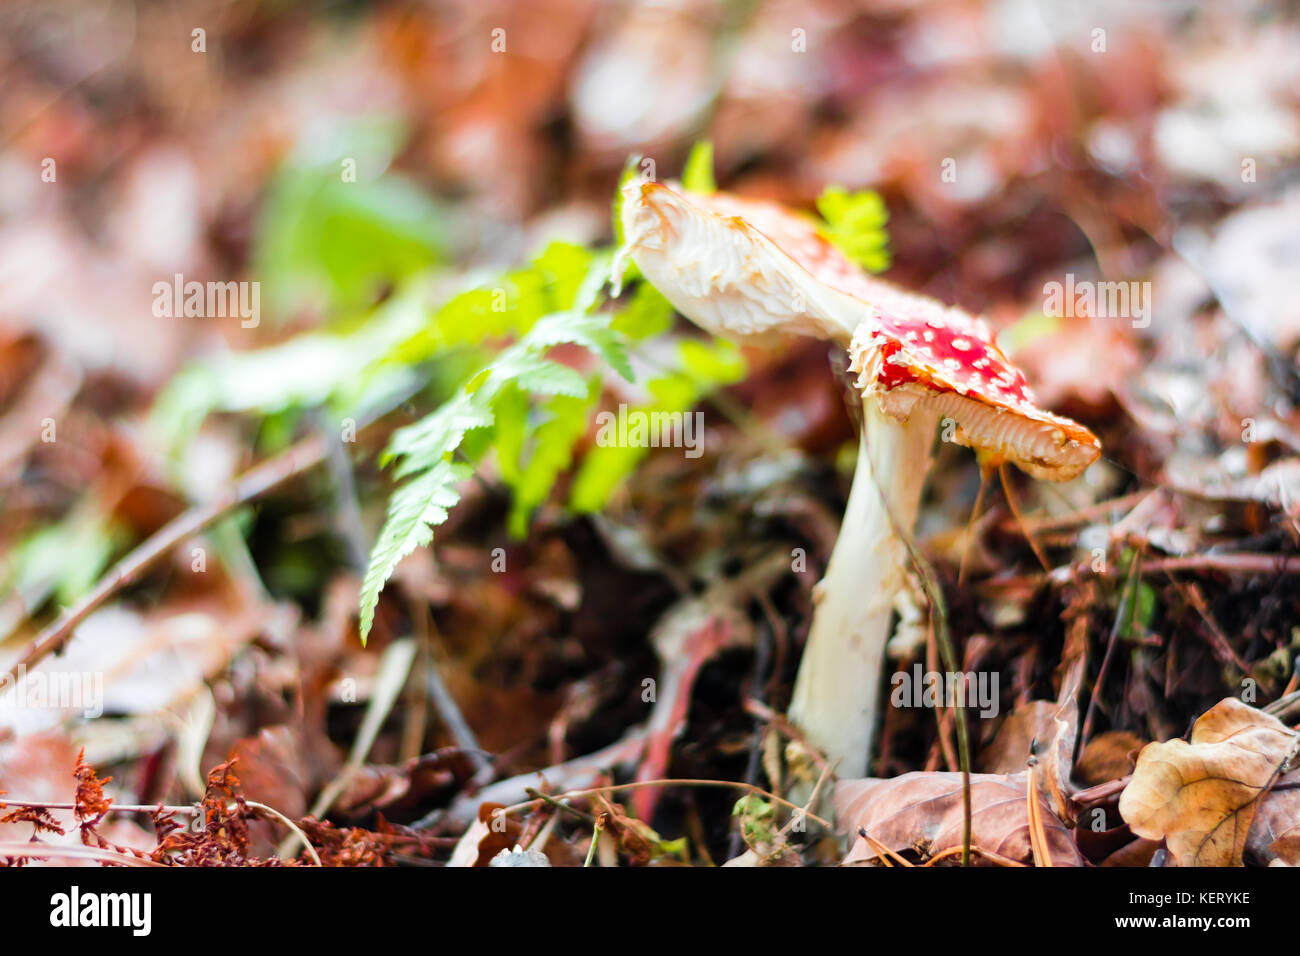 Rouge nice moisissure toxique sur le sol dans une forêt. Également connu sous le nom de fly agarics. Banque D'Images